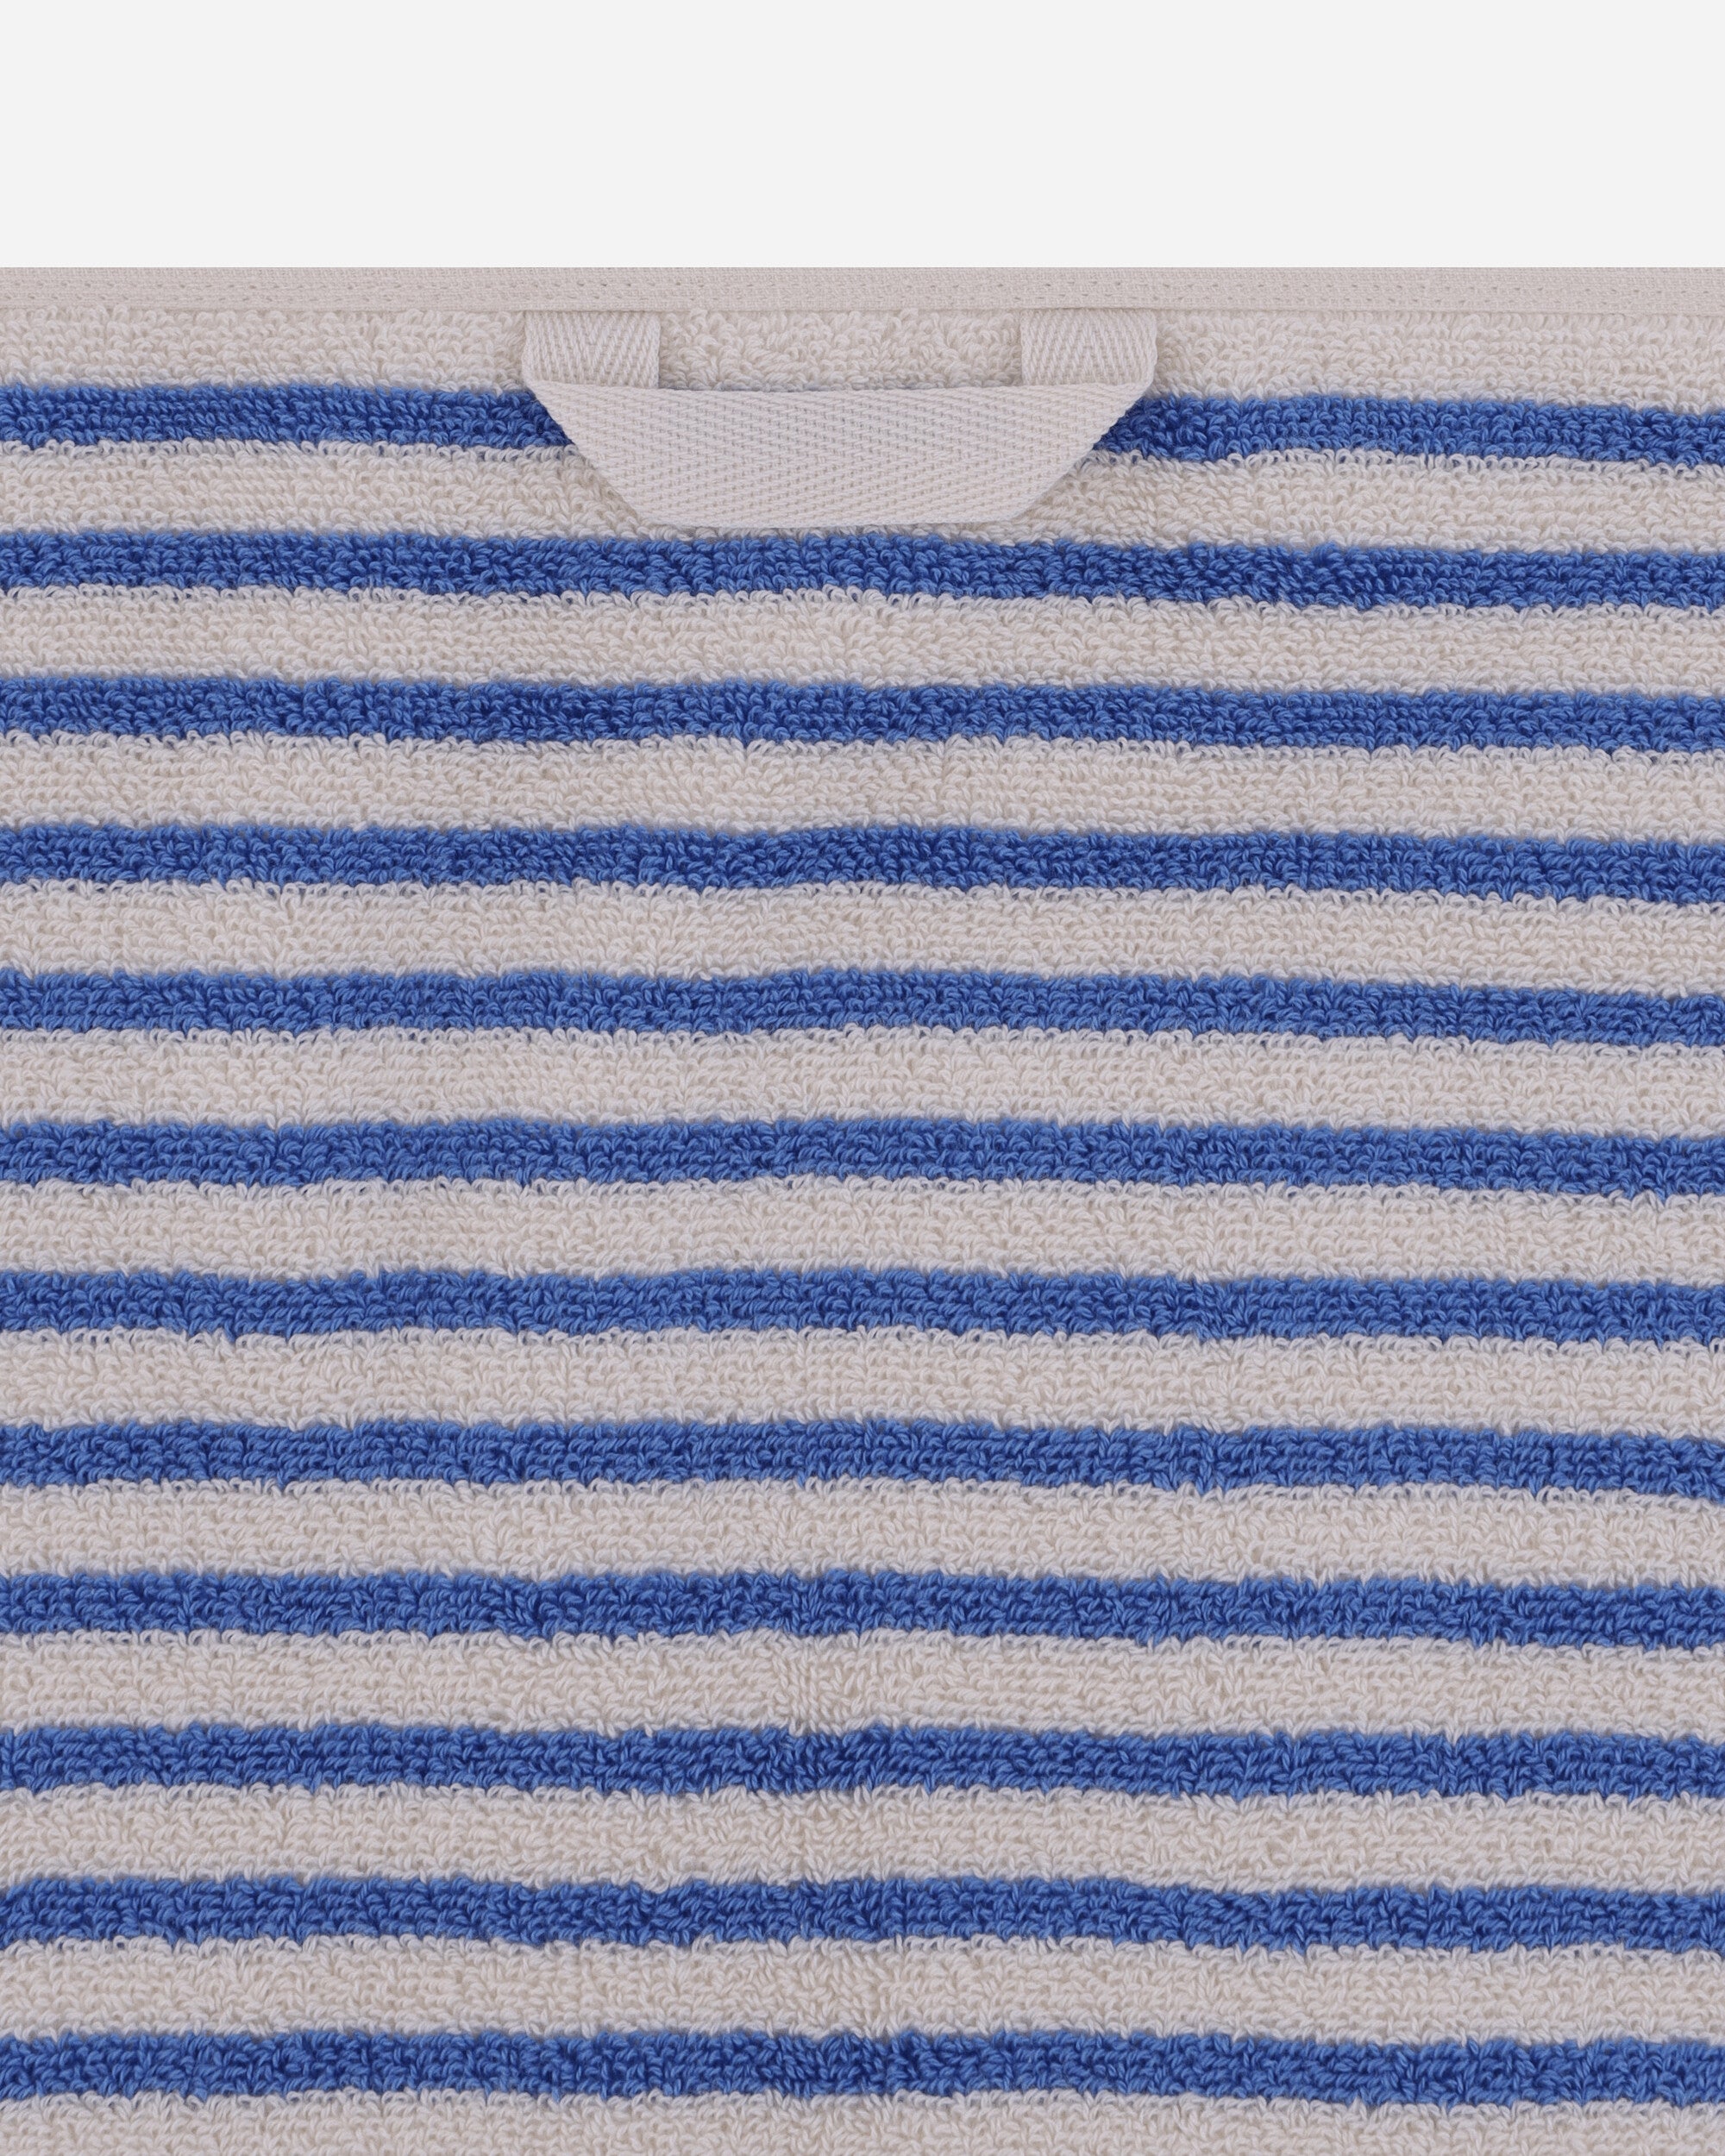 Tekla Terry Towel - Striped 70X140 Coastal Stripes Textile Bath Towels TT-70x140 CS